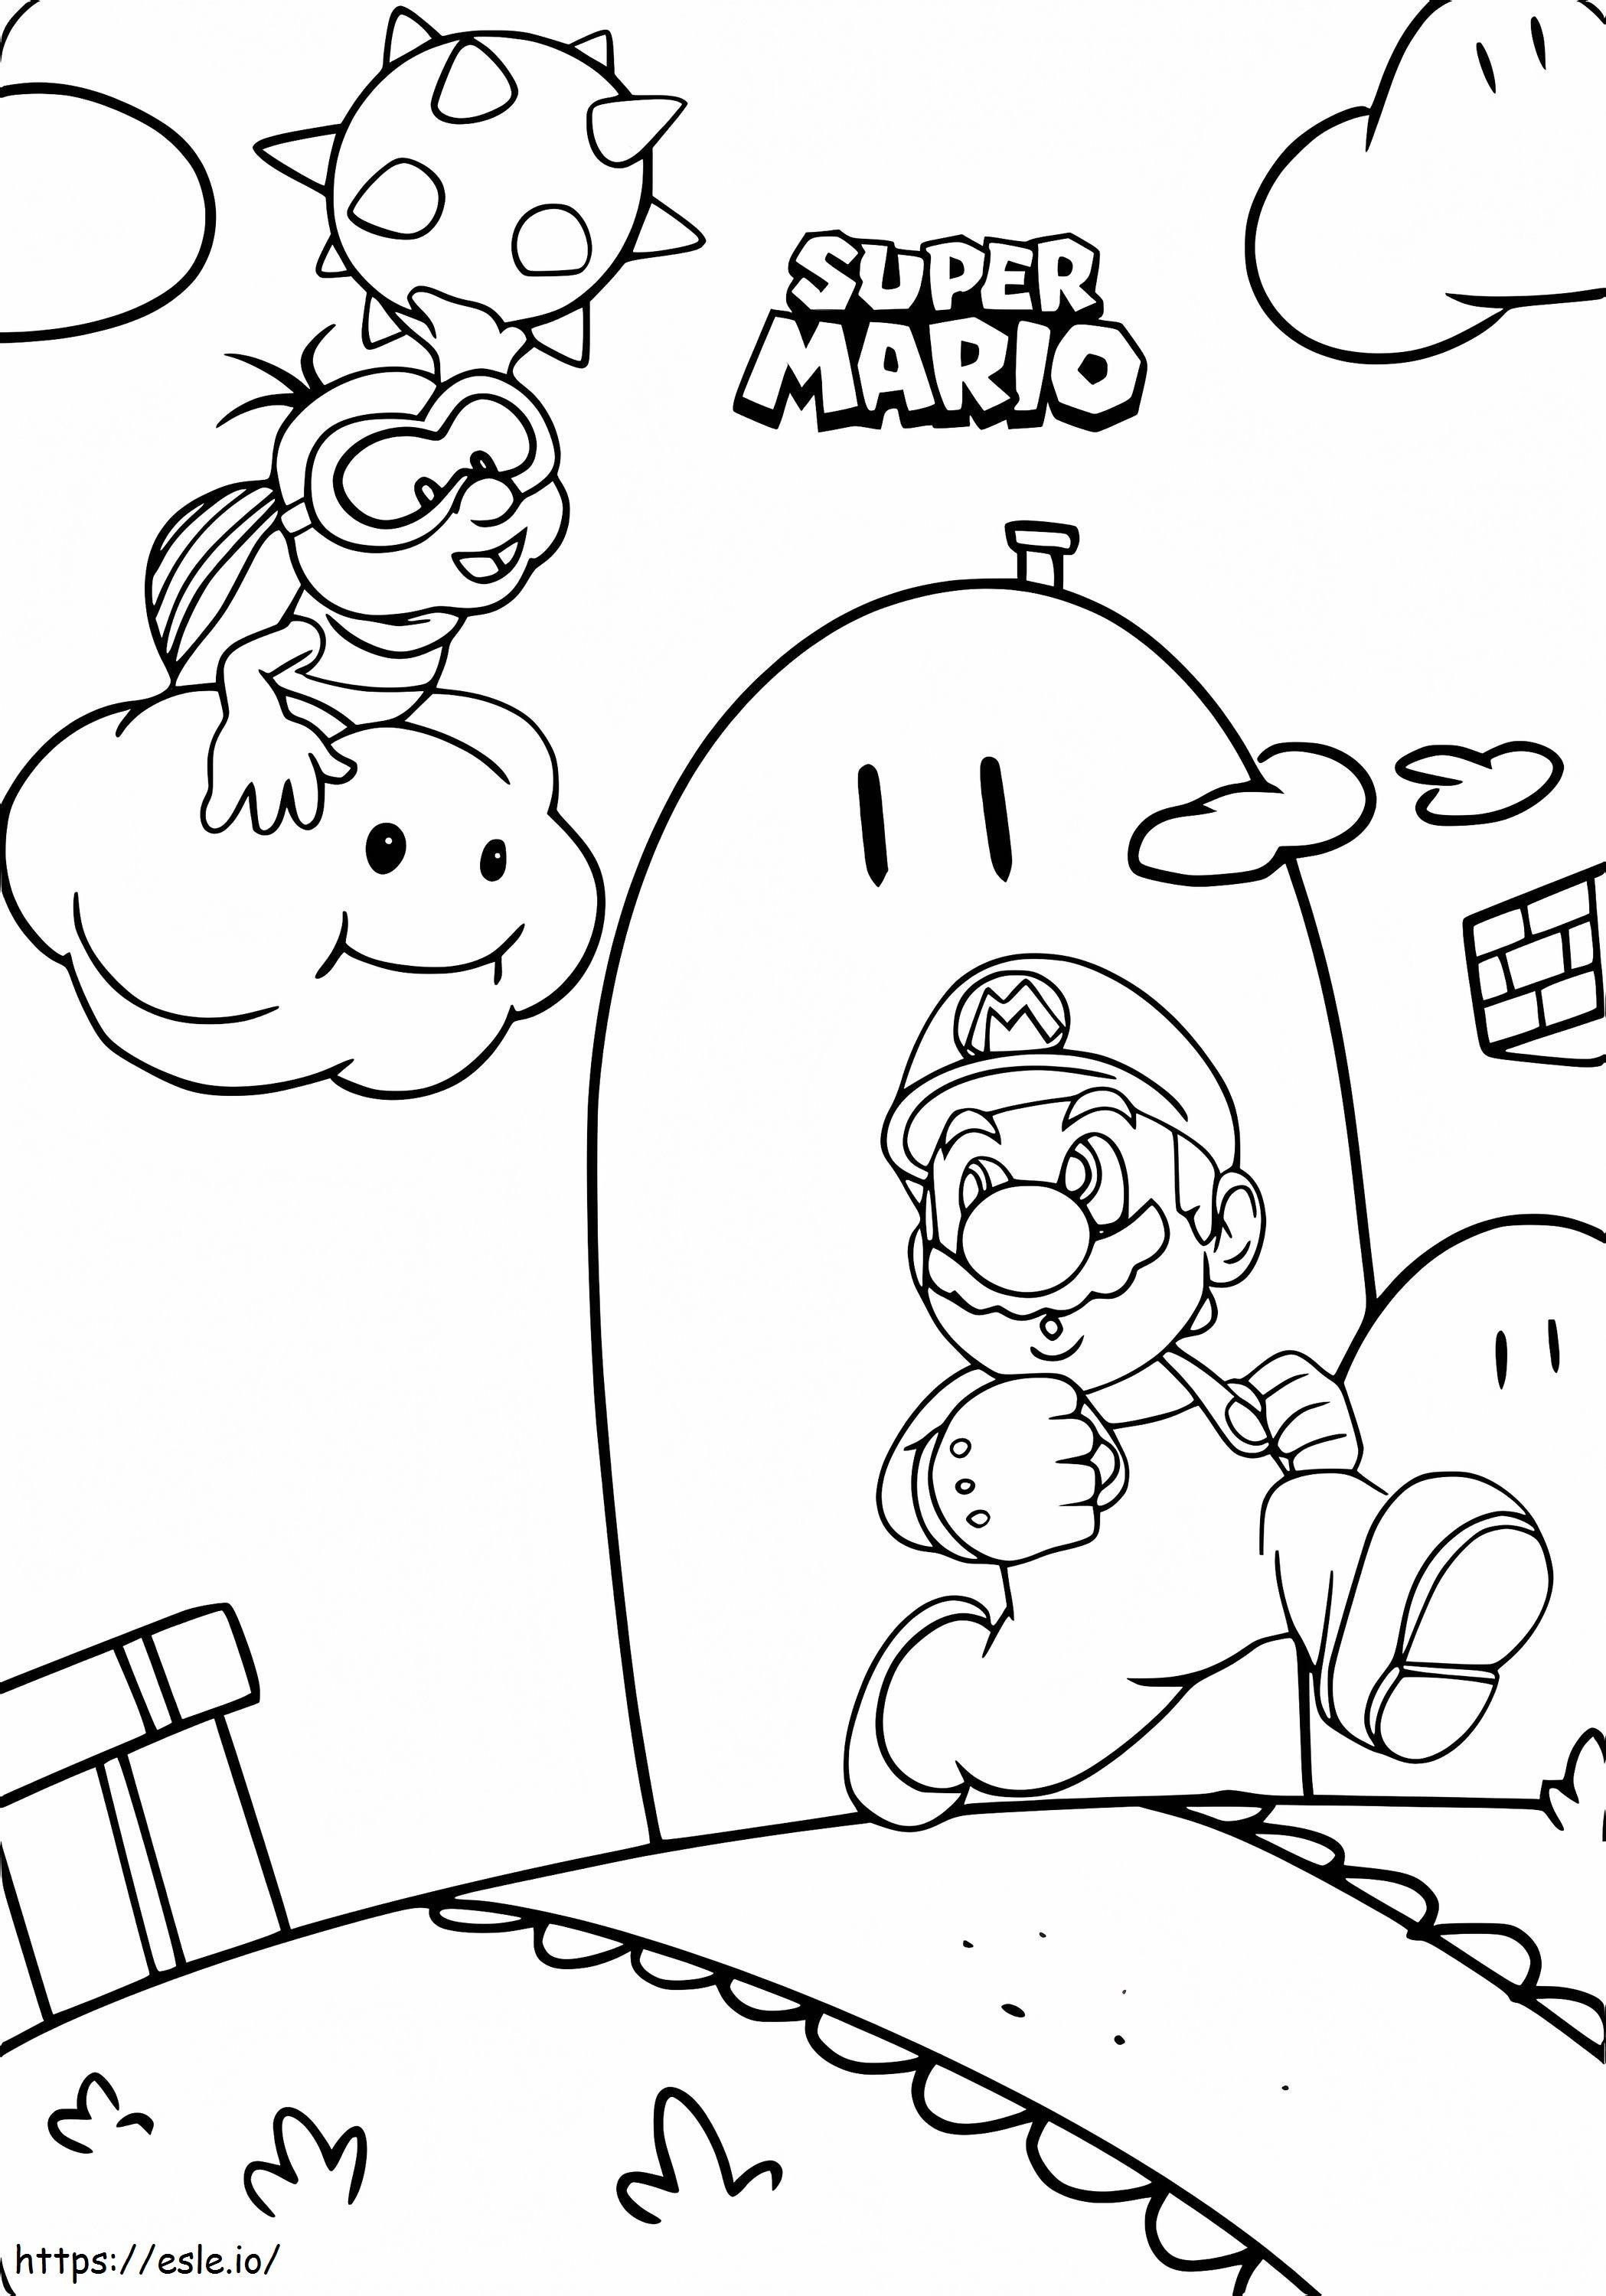 Super Mario w akcji w grze 716X1024 kolorowanka